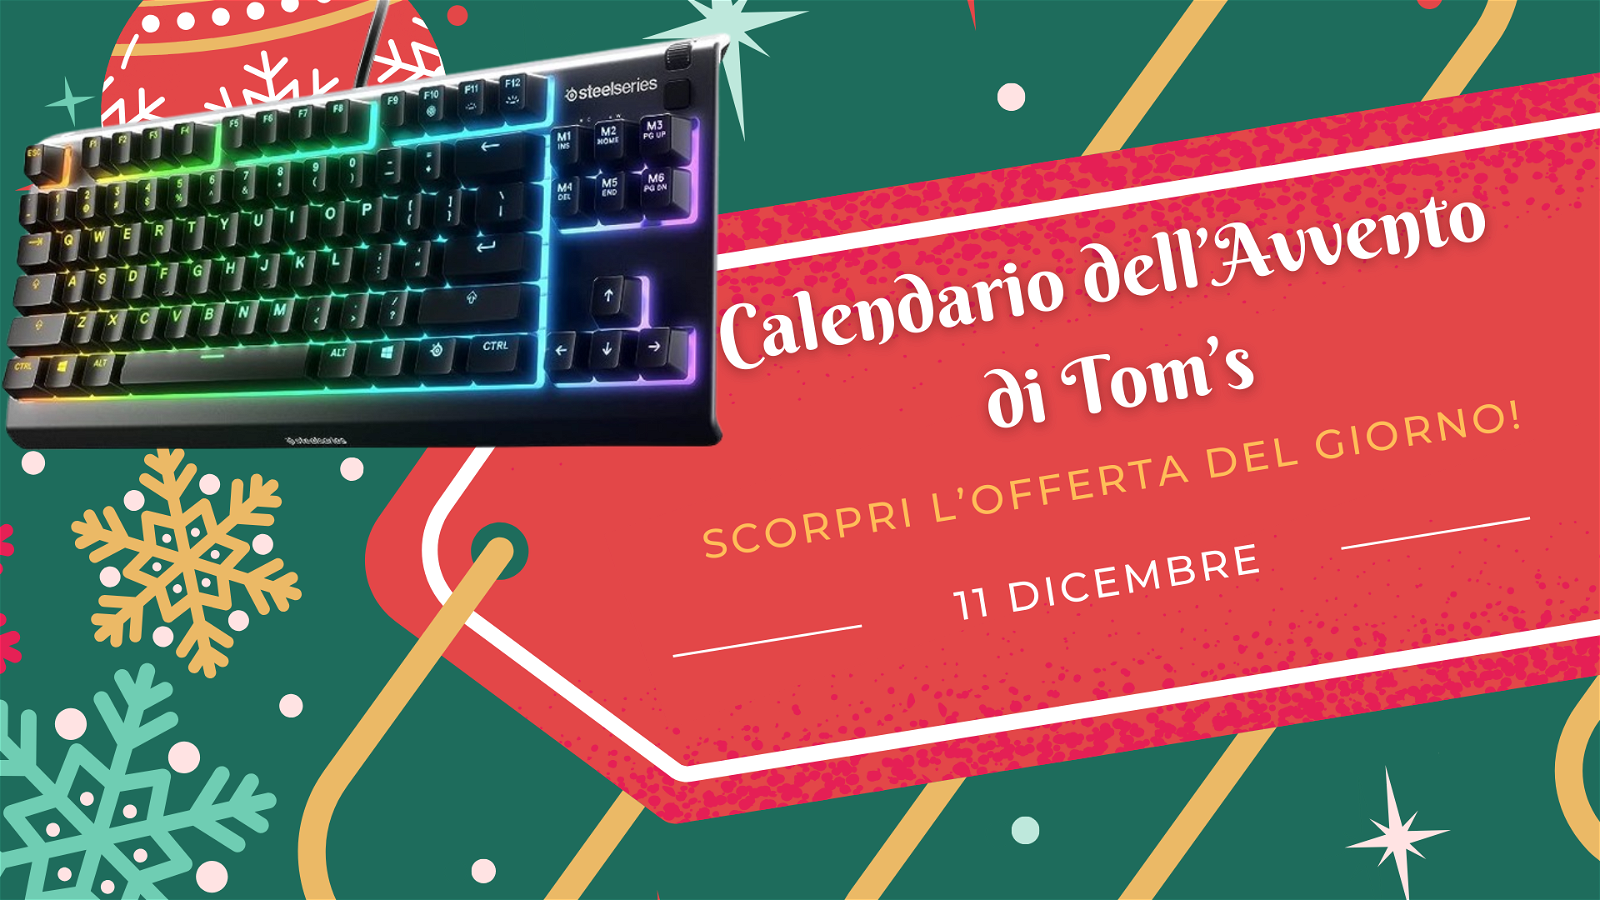 Immagine di Calendario dell'avvento di Tom's: scopri l'offerta dell'11 dicembre